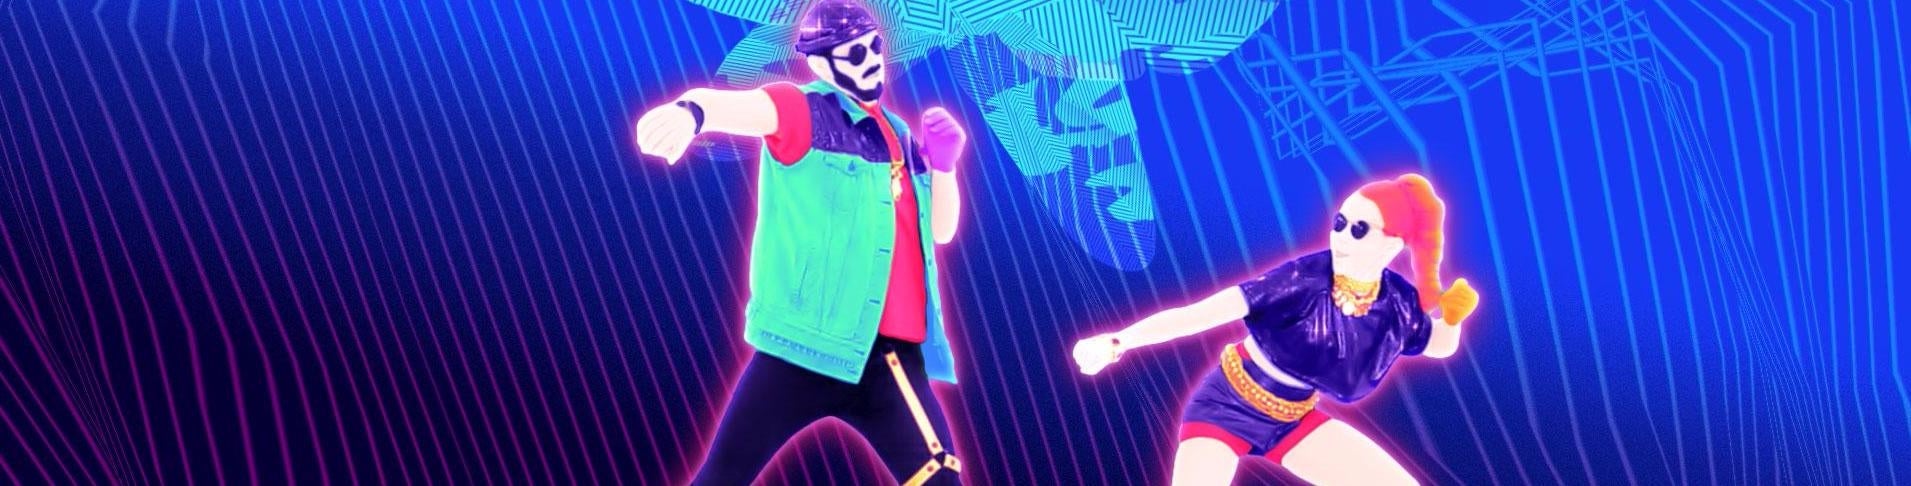 Afbeeldingen van Just Dance 2017 review - Rondedansje